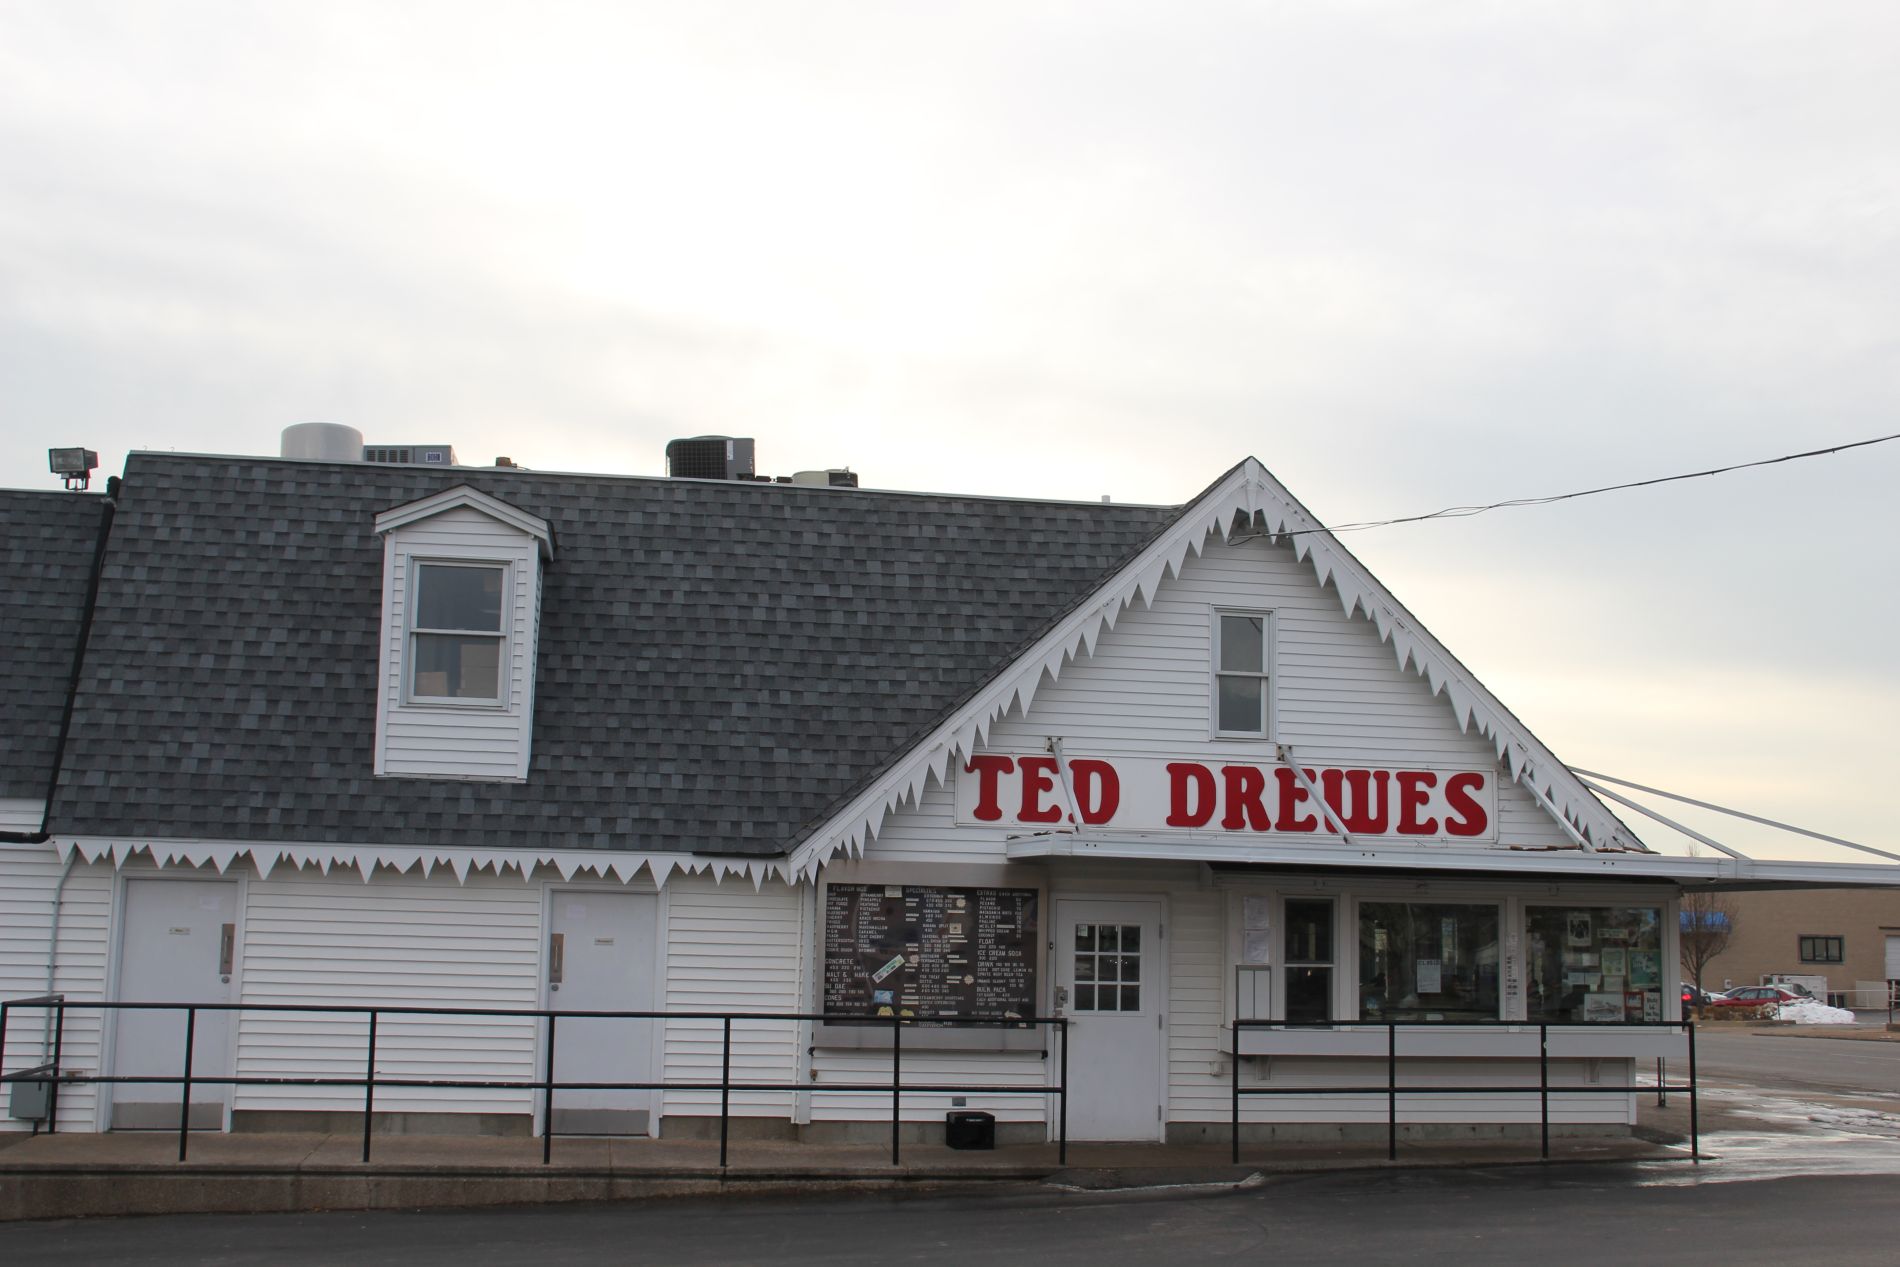 Ted Drewes Frozen Custard in St. Louis, Missouri